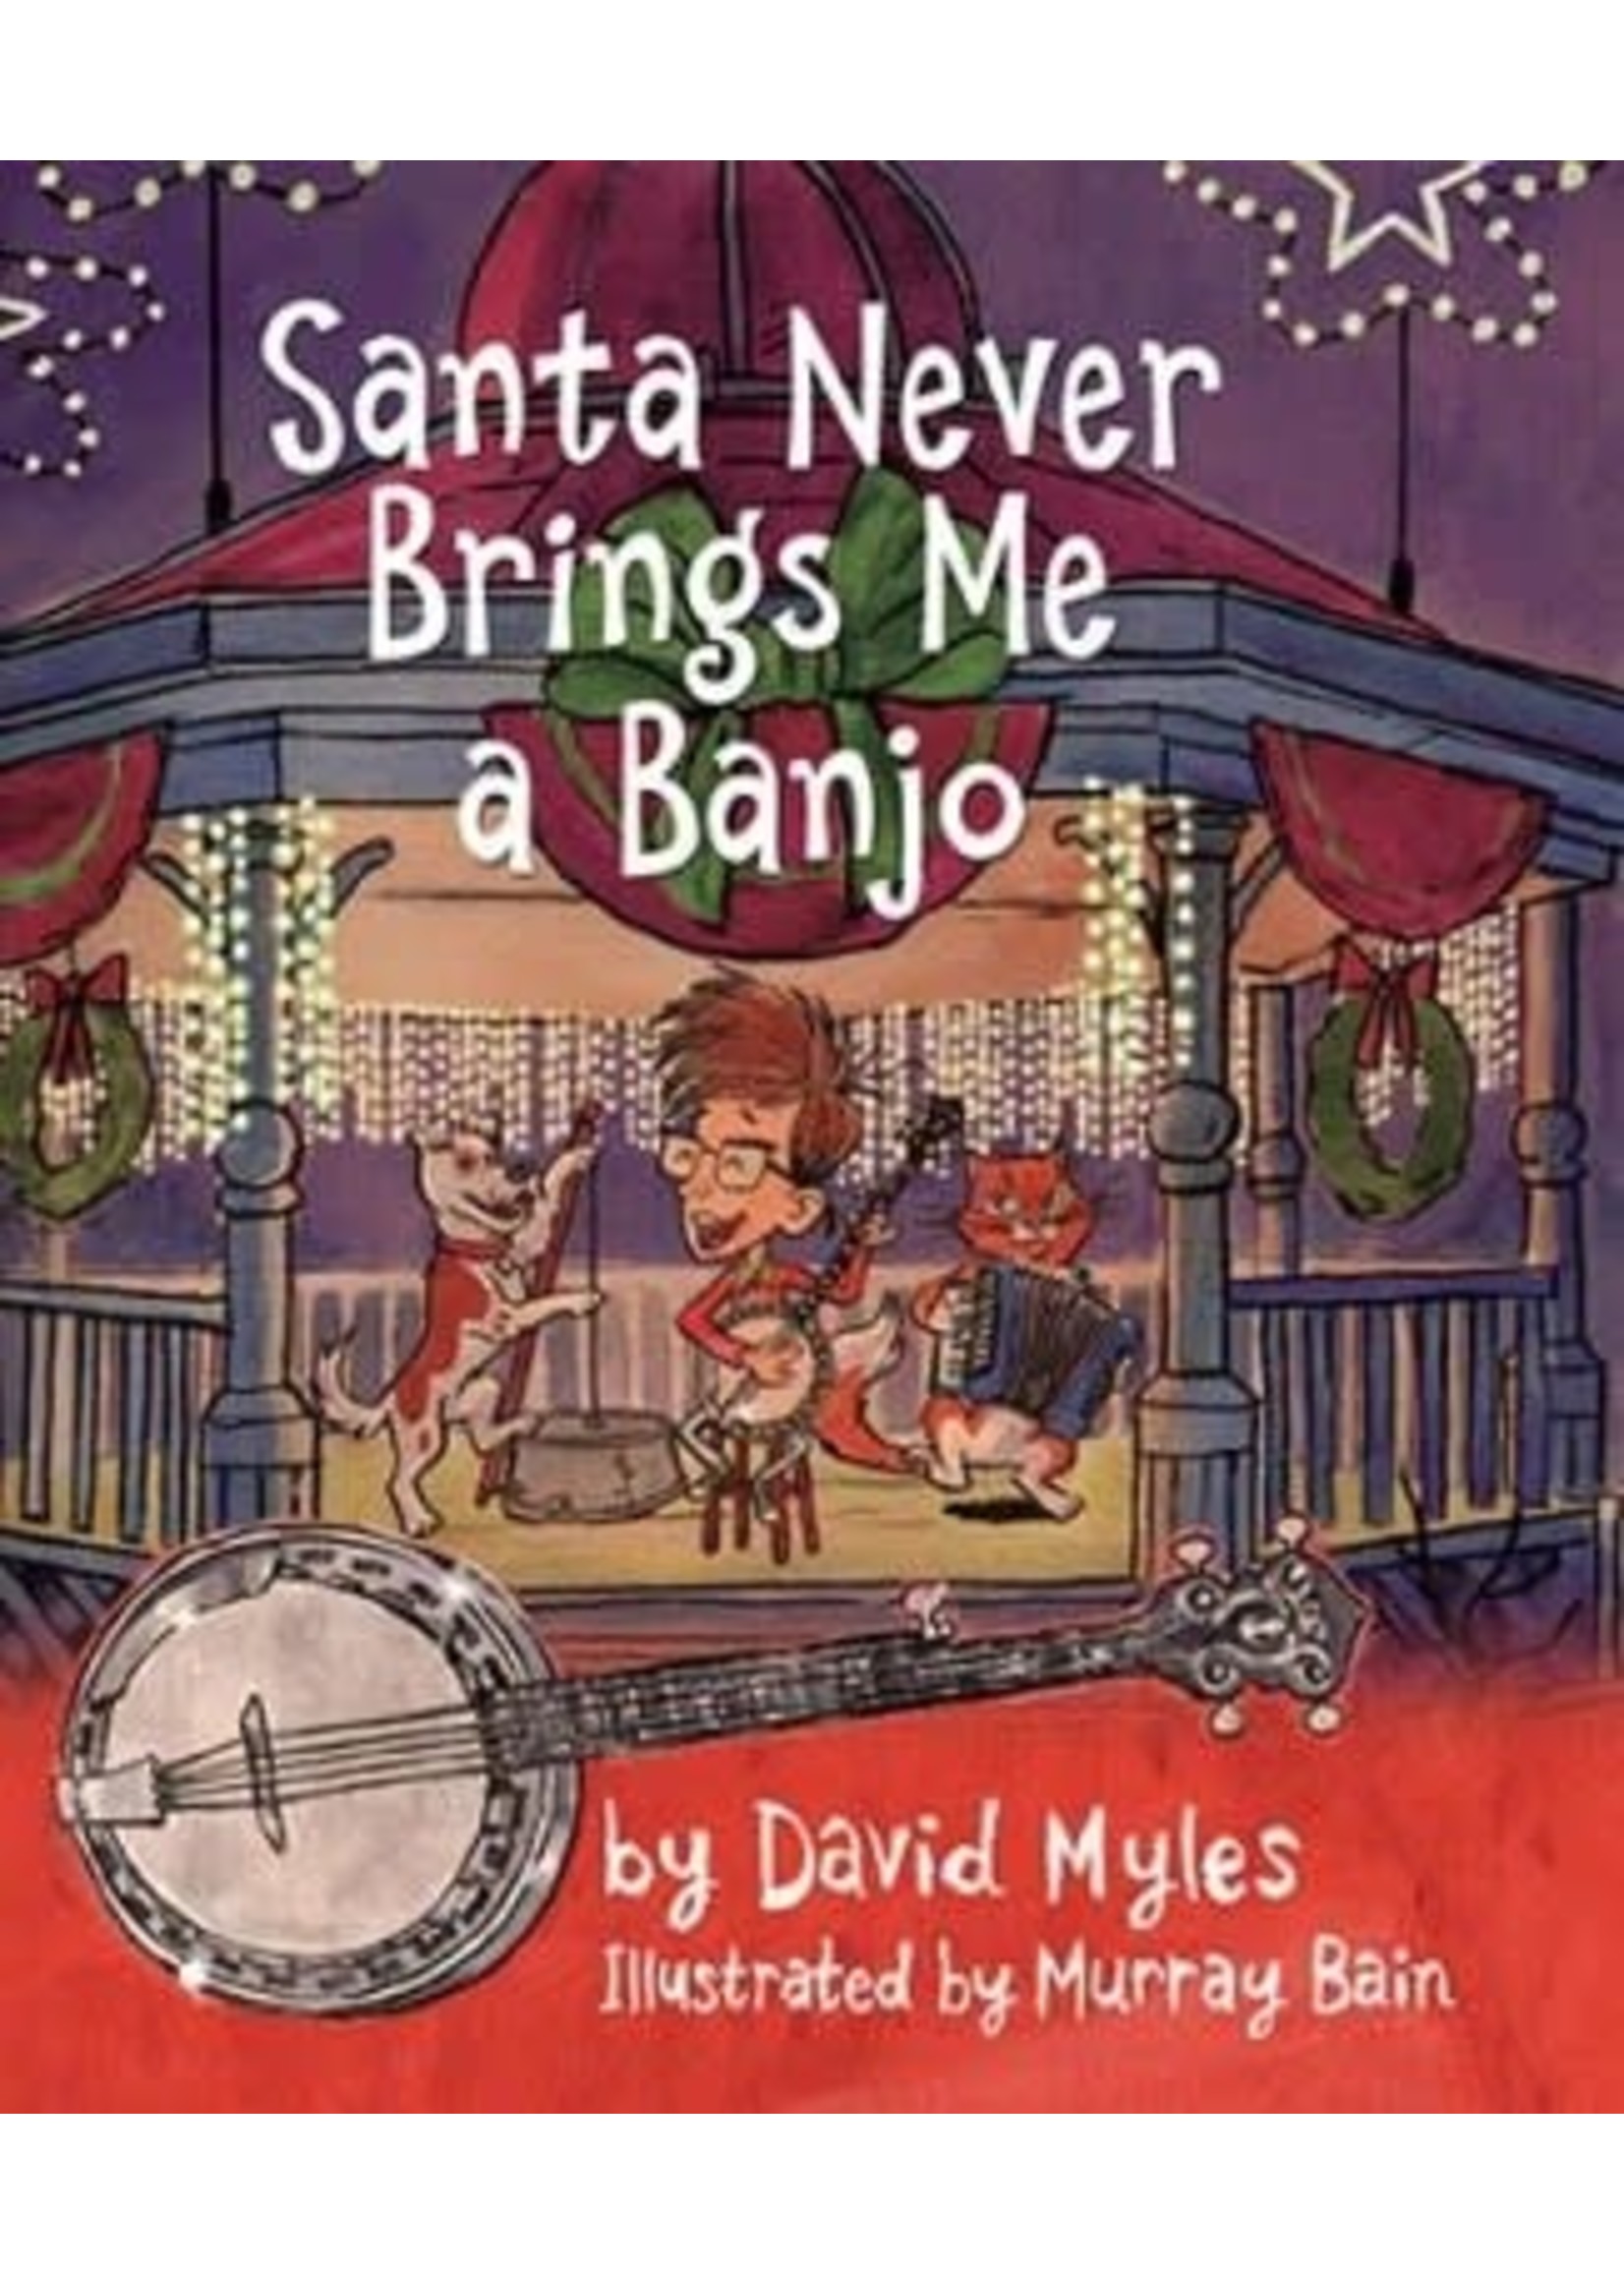 Santa Never Brings Me a Banjo by David Myles